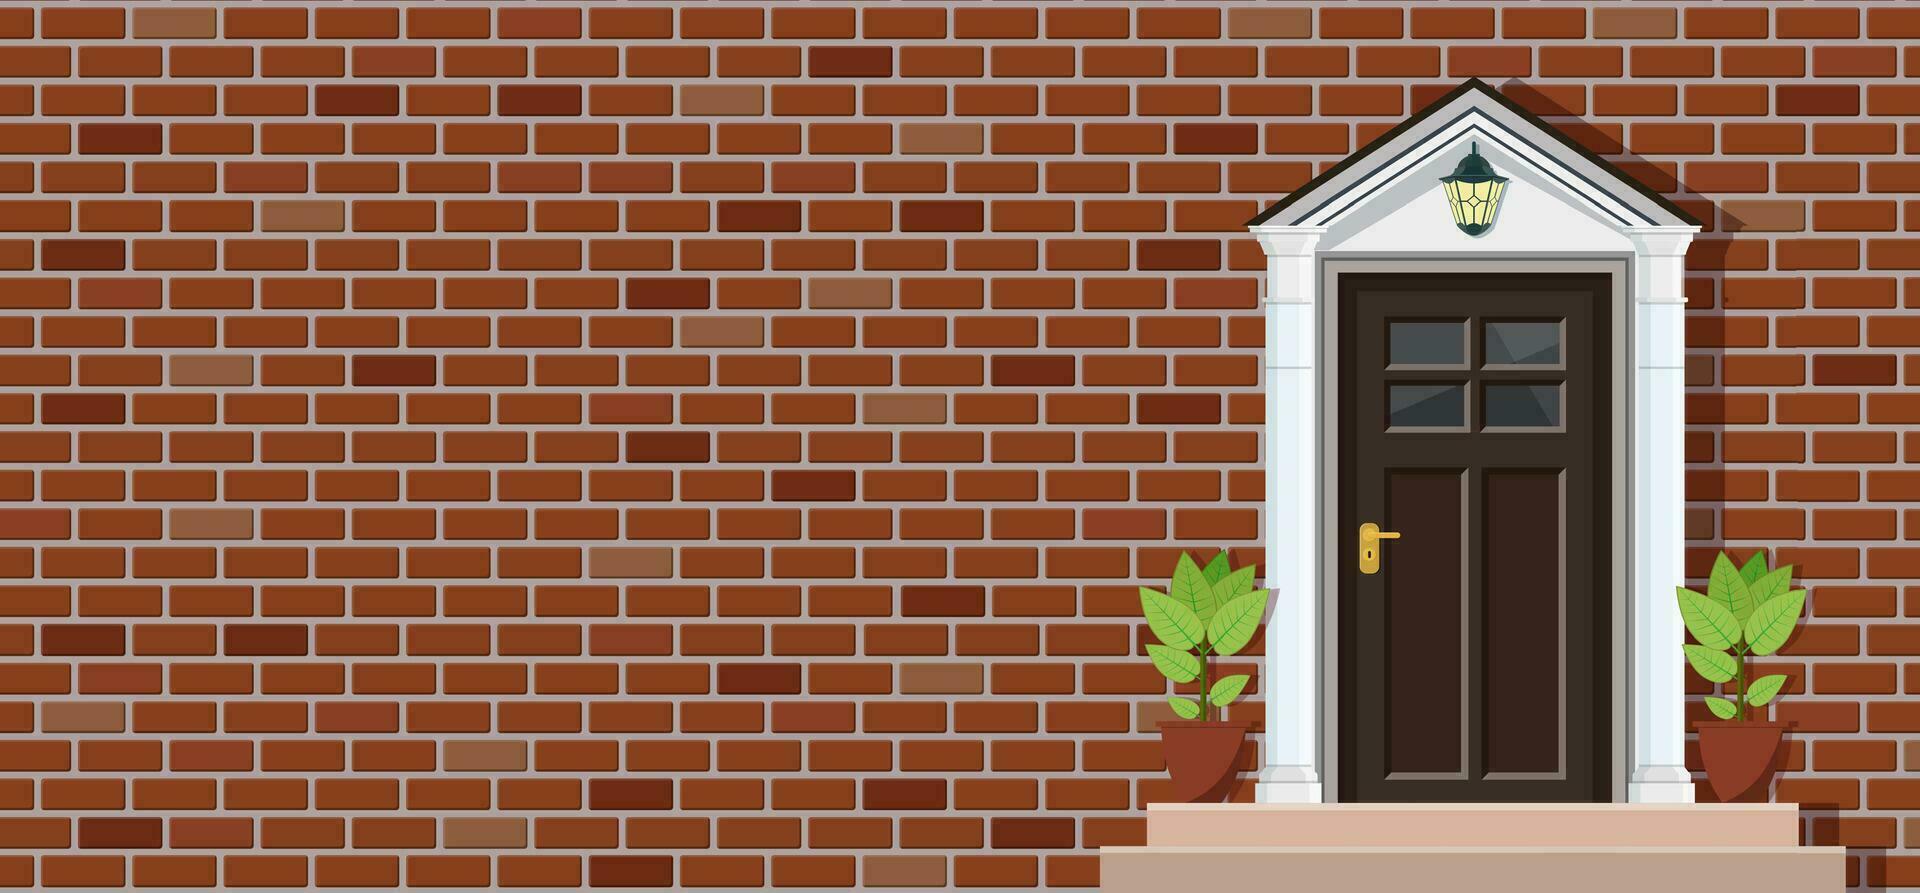 houten deur van steen huis voorkant visie, architectuur achtergrond, gebouw huis echt landgoed achtergrond. vector illustratie in vlak stijl